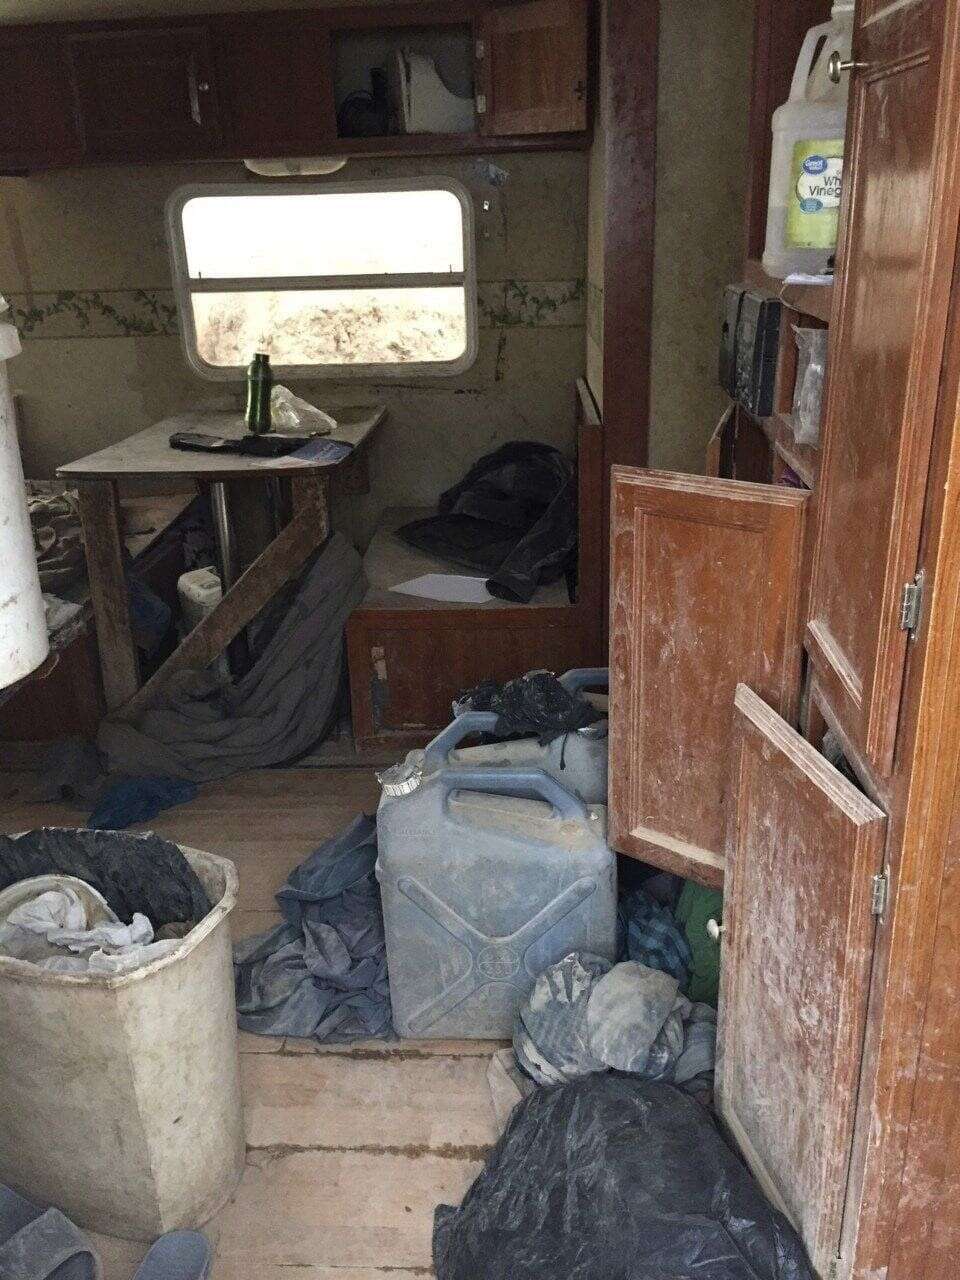 L'intérieur de la caravane dans laquelle ont été retrouvés les 11 enfants.